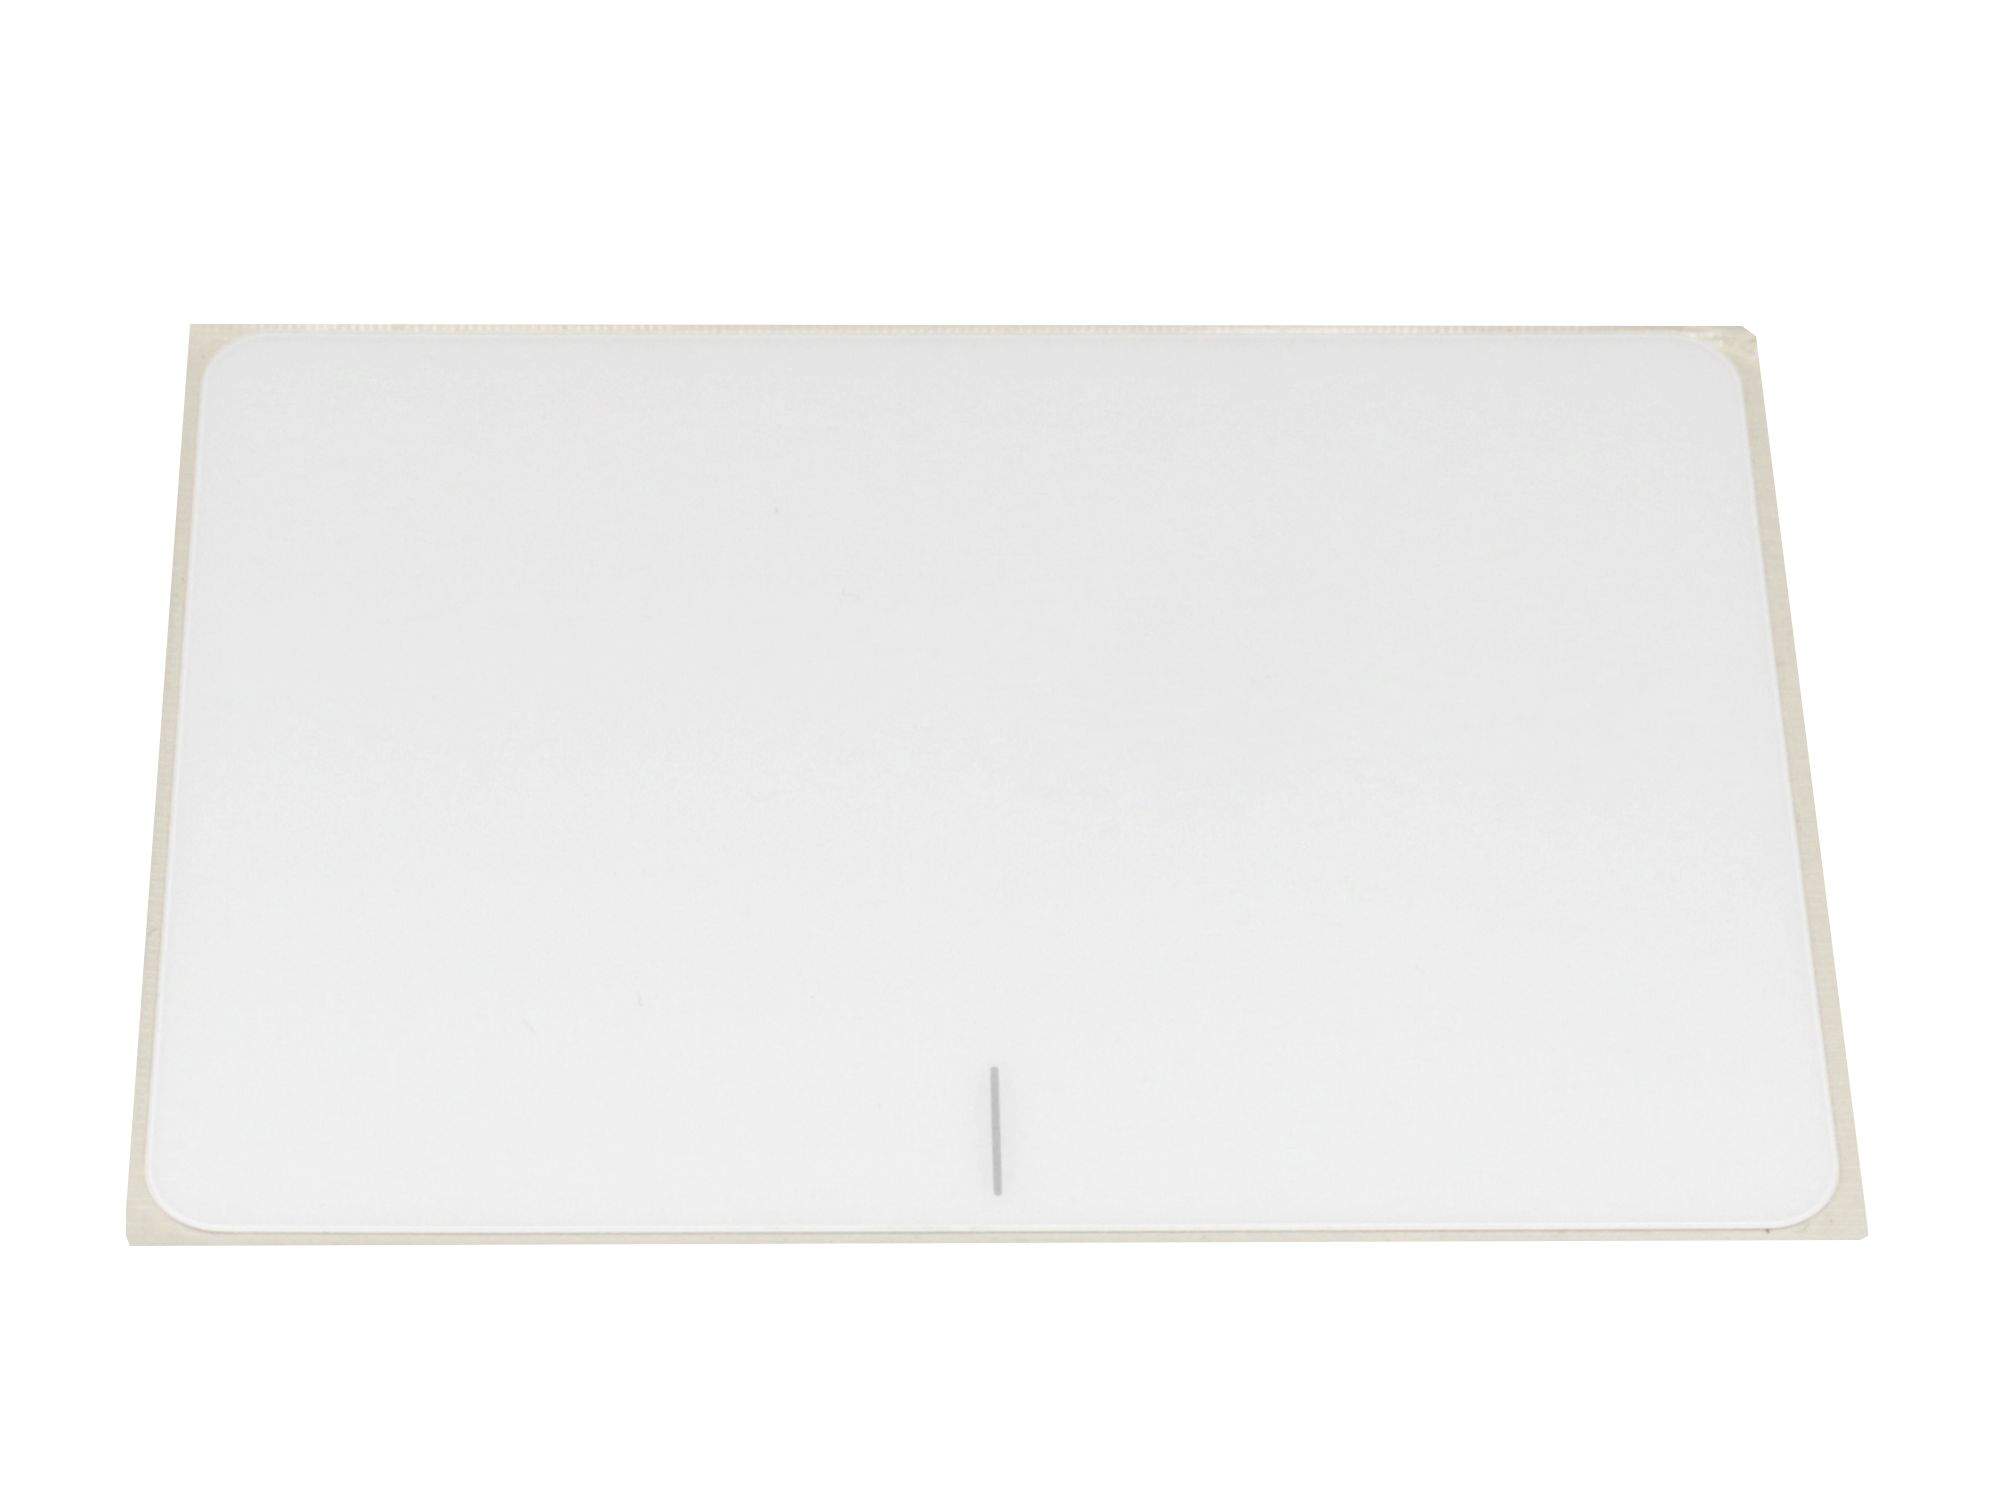 ASUS Touchpad Abdeckung weiß Original für Asus VivoBook X556UJ Serie